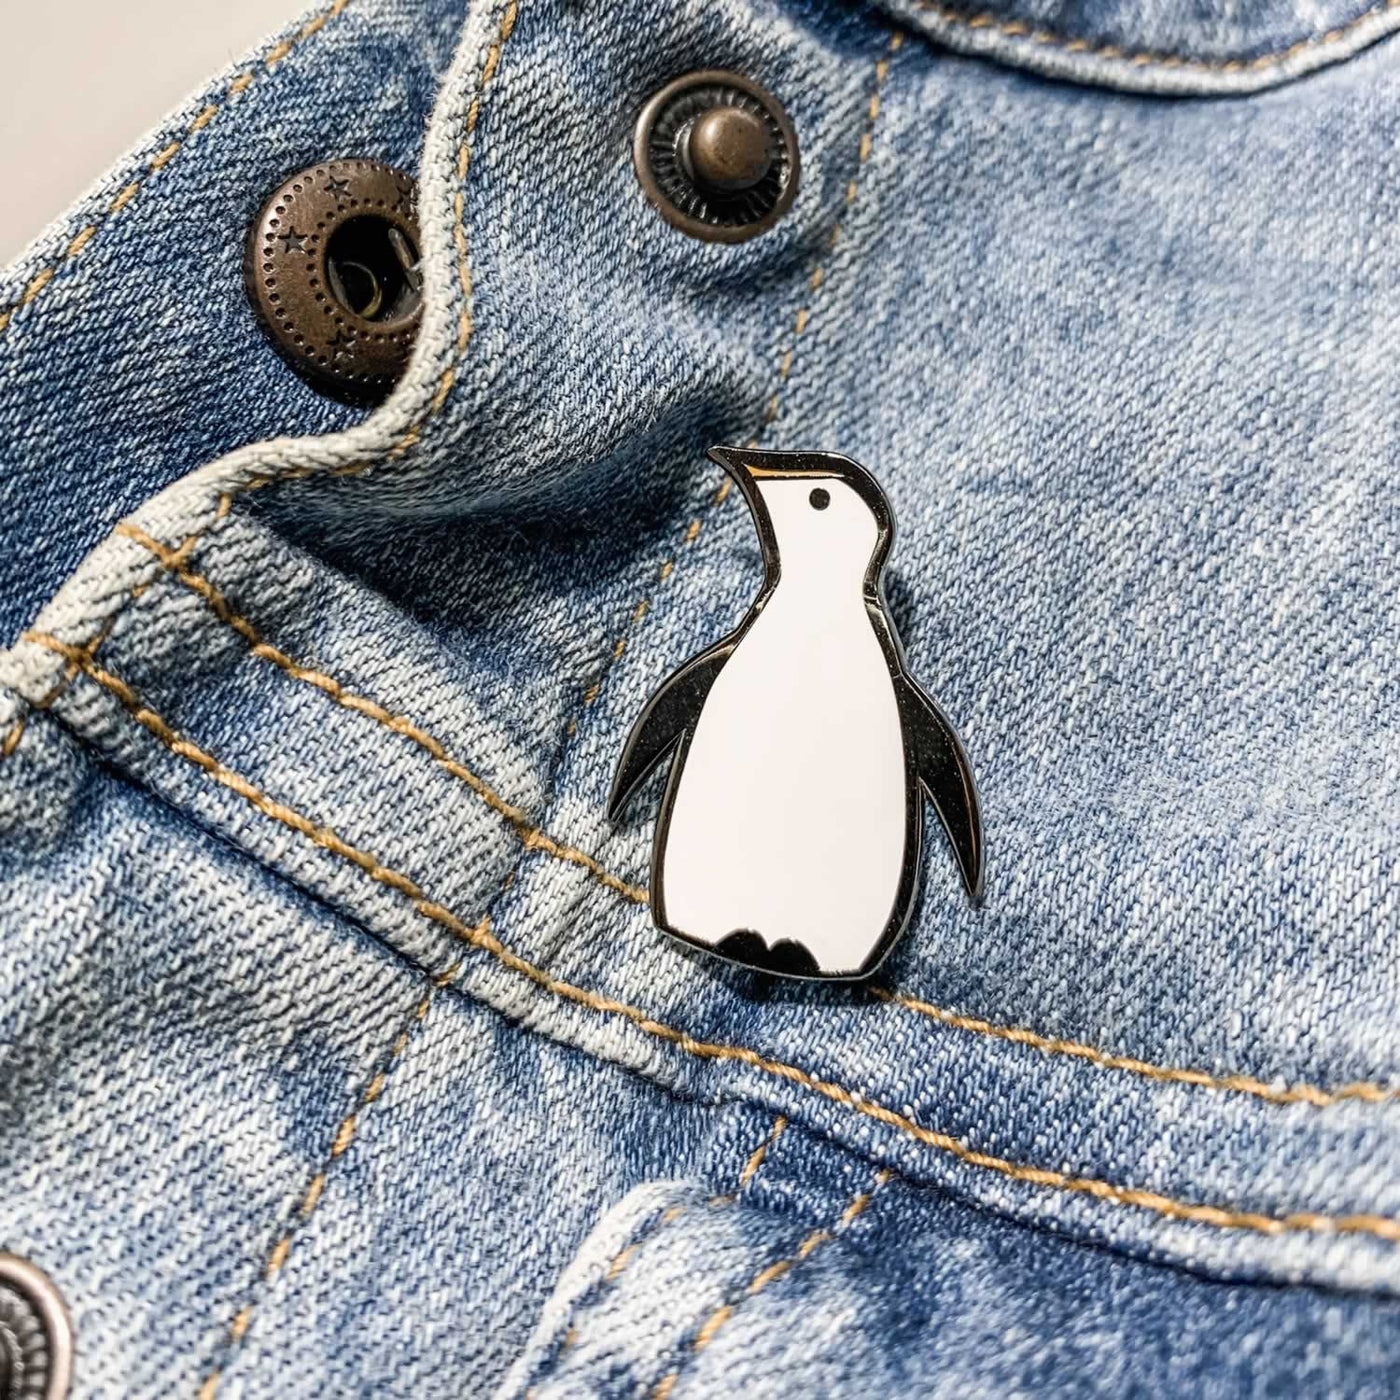 Penguin Enamel Pin on Denim